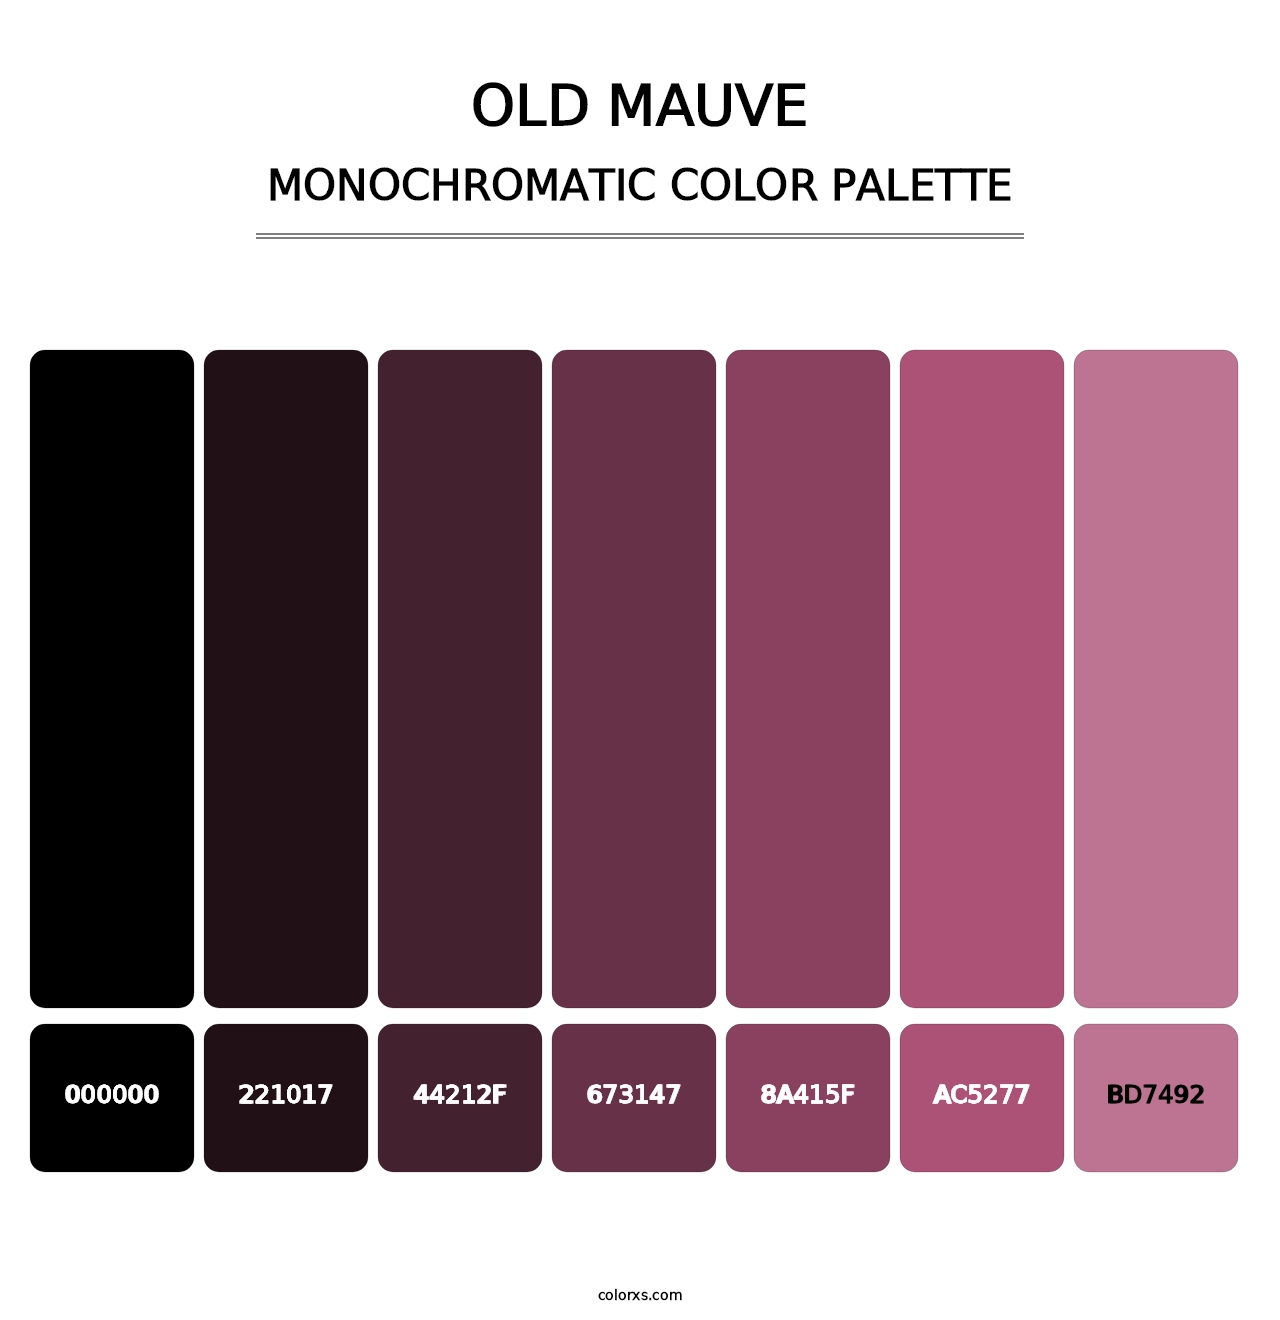 Old Mauve - Monochromatic Color Palette